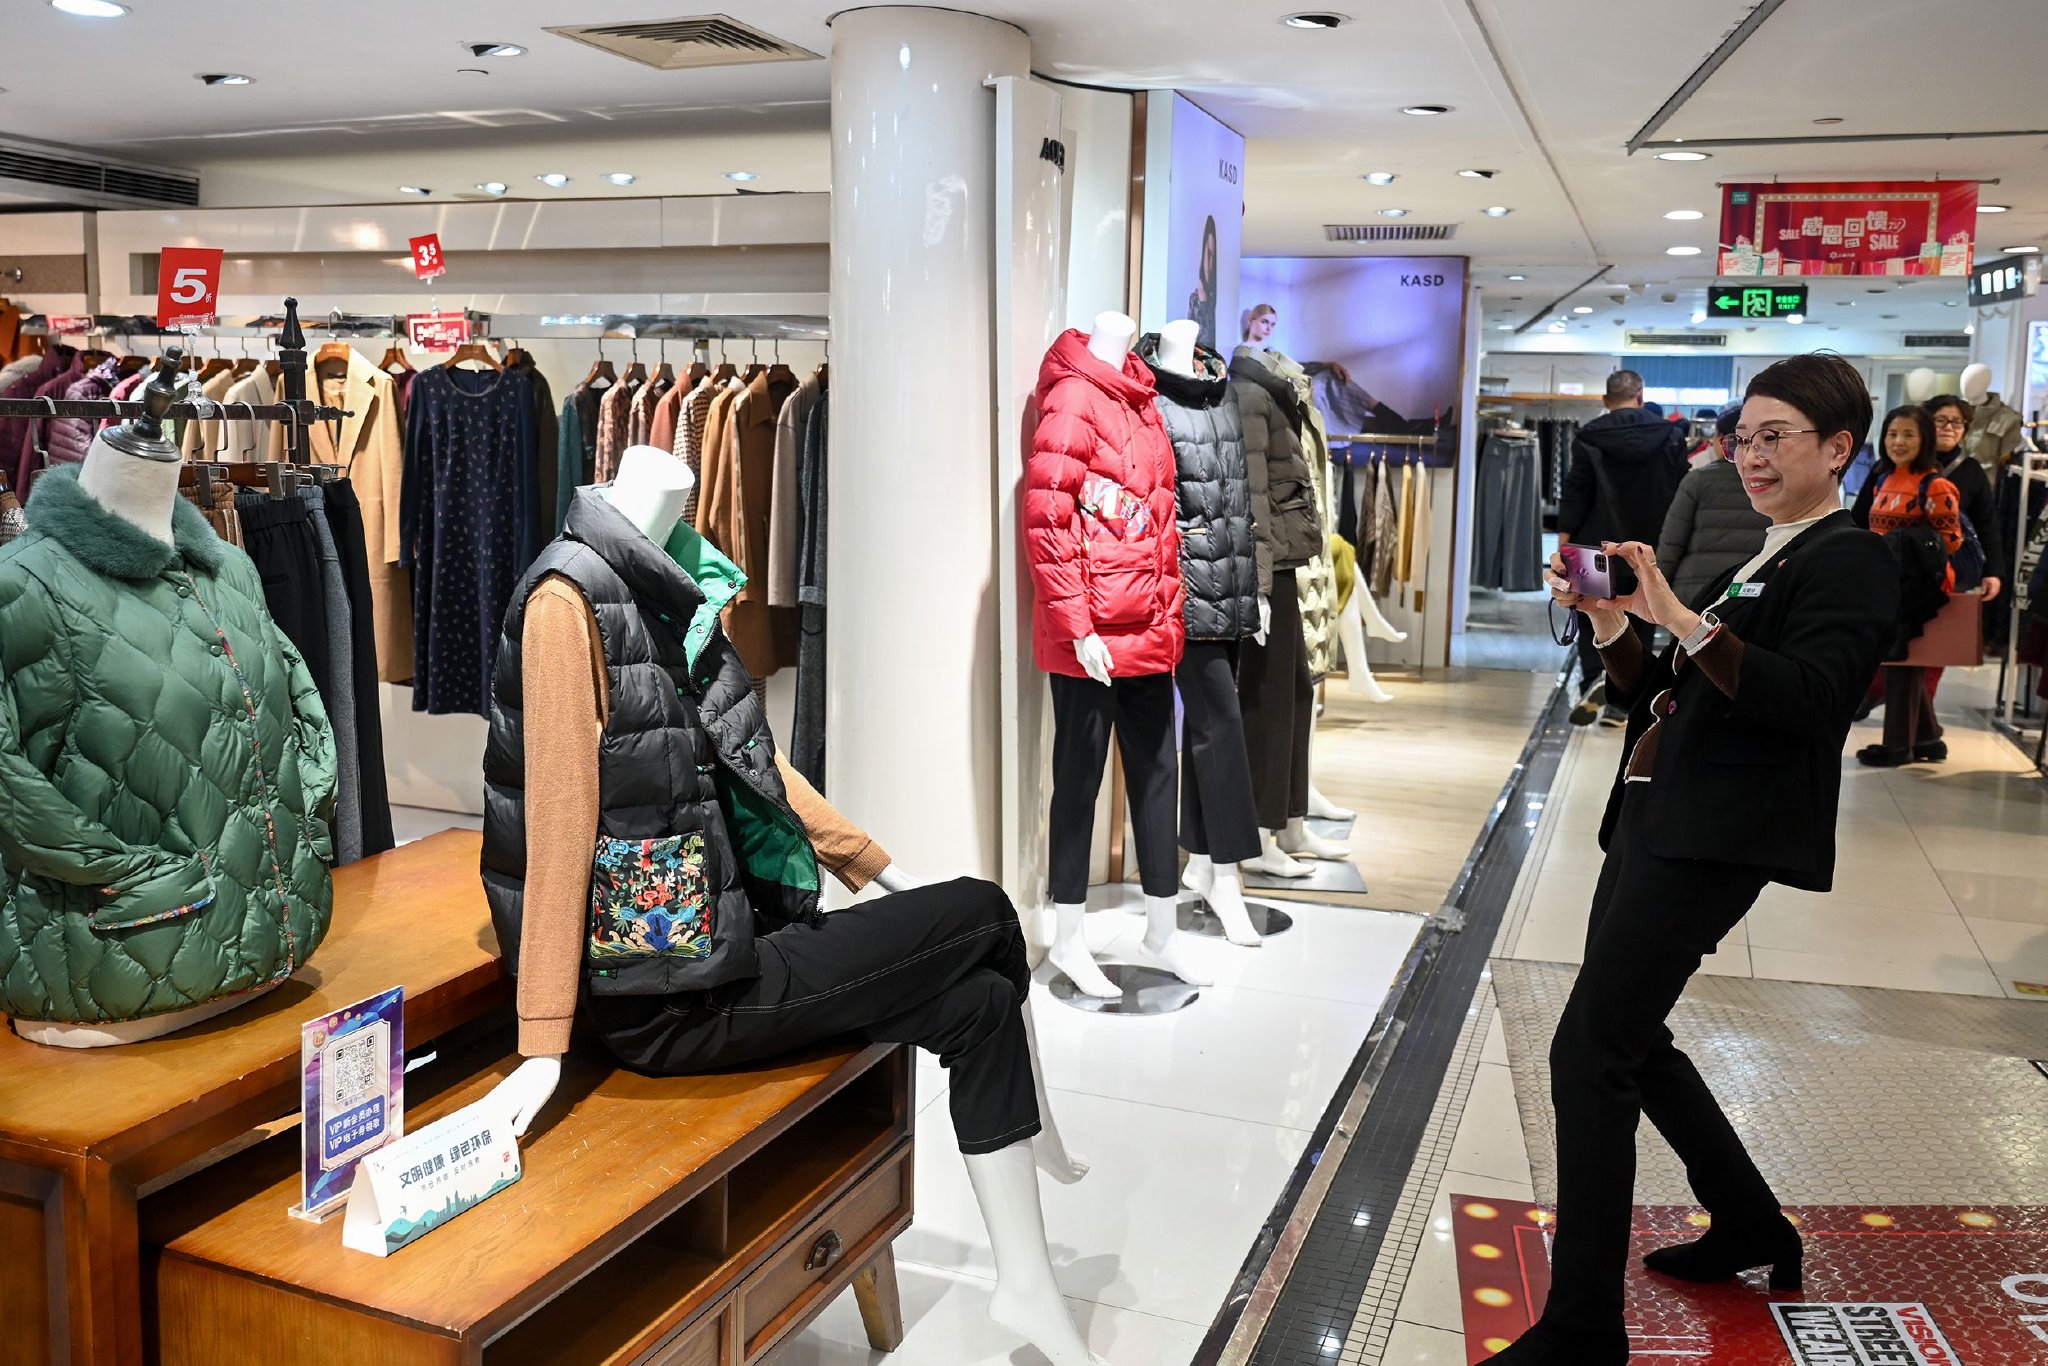 吴菊珍用手机拍摄自己工作的服装店内场景。